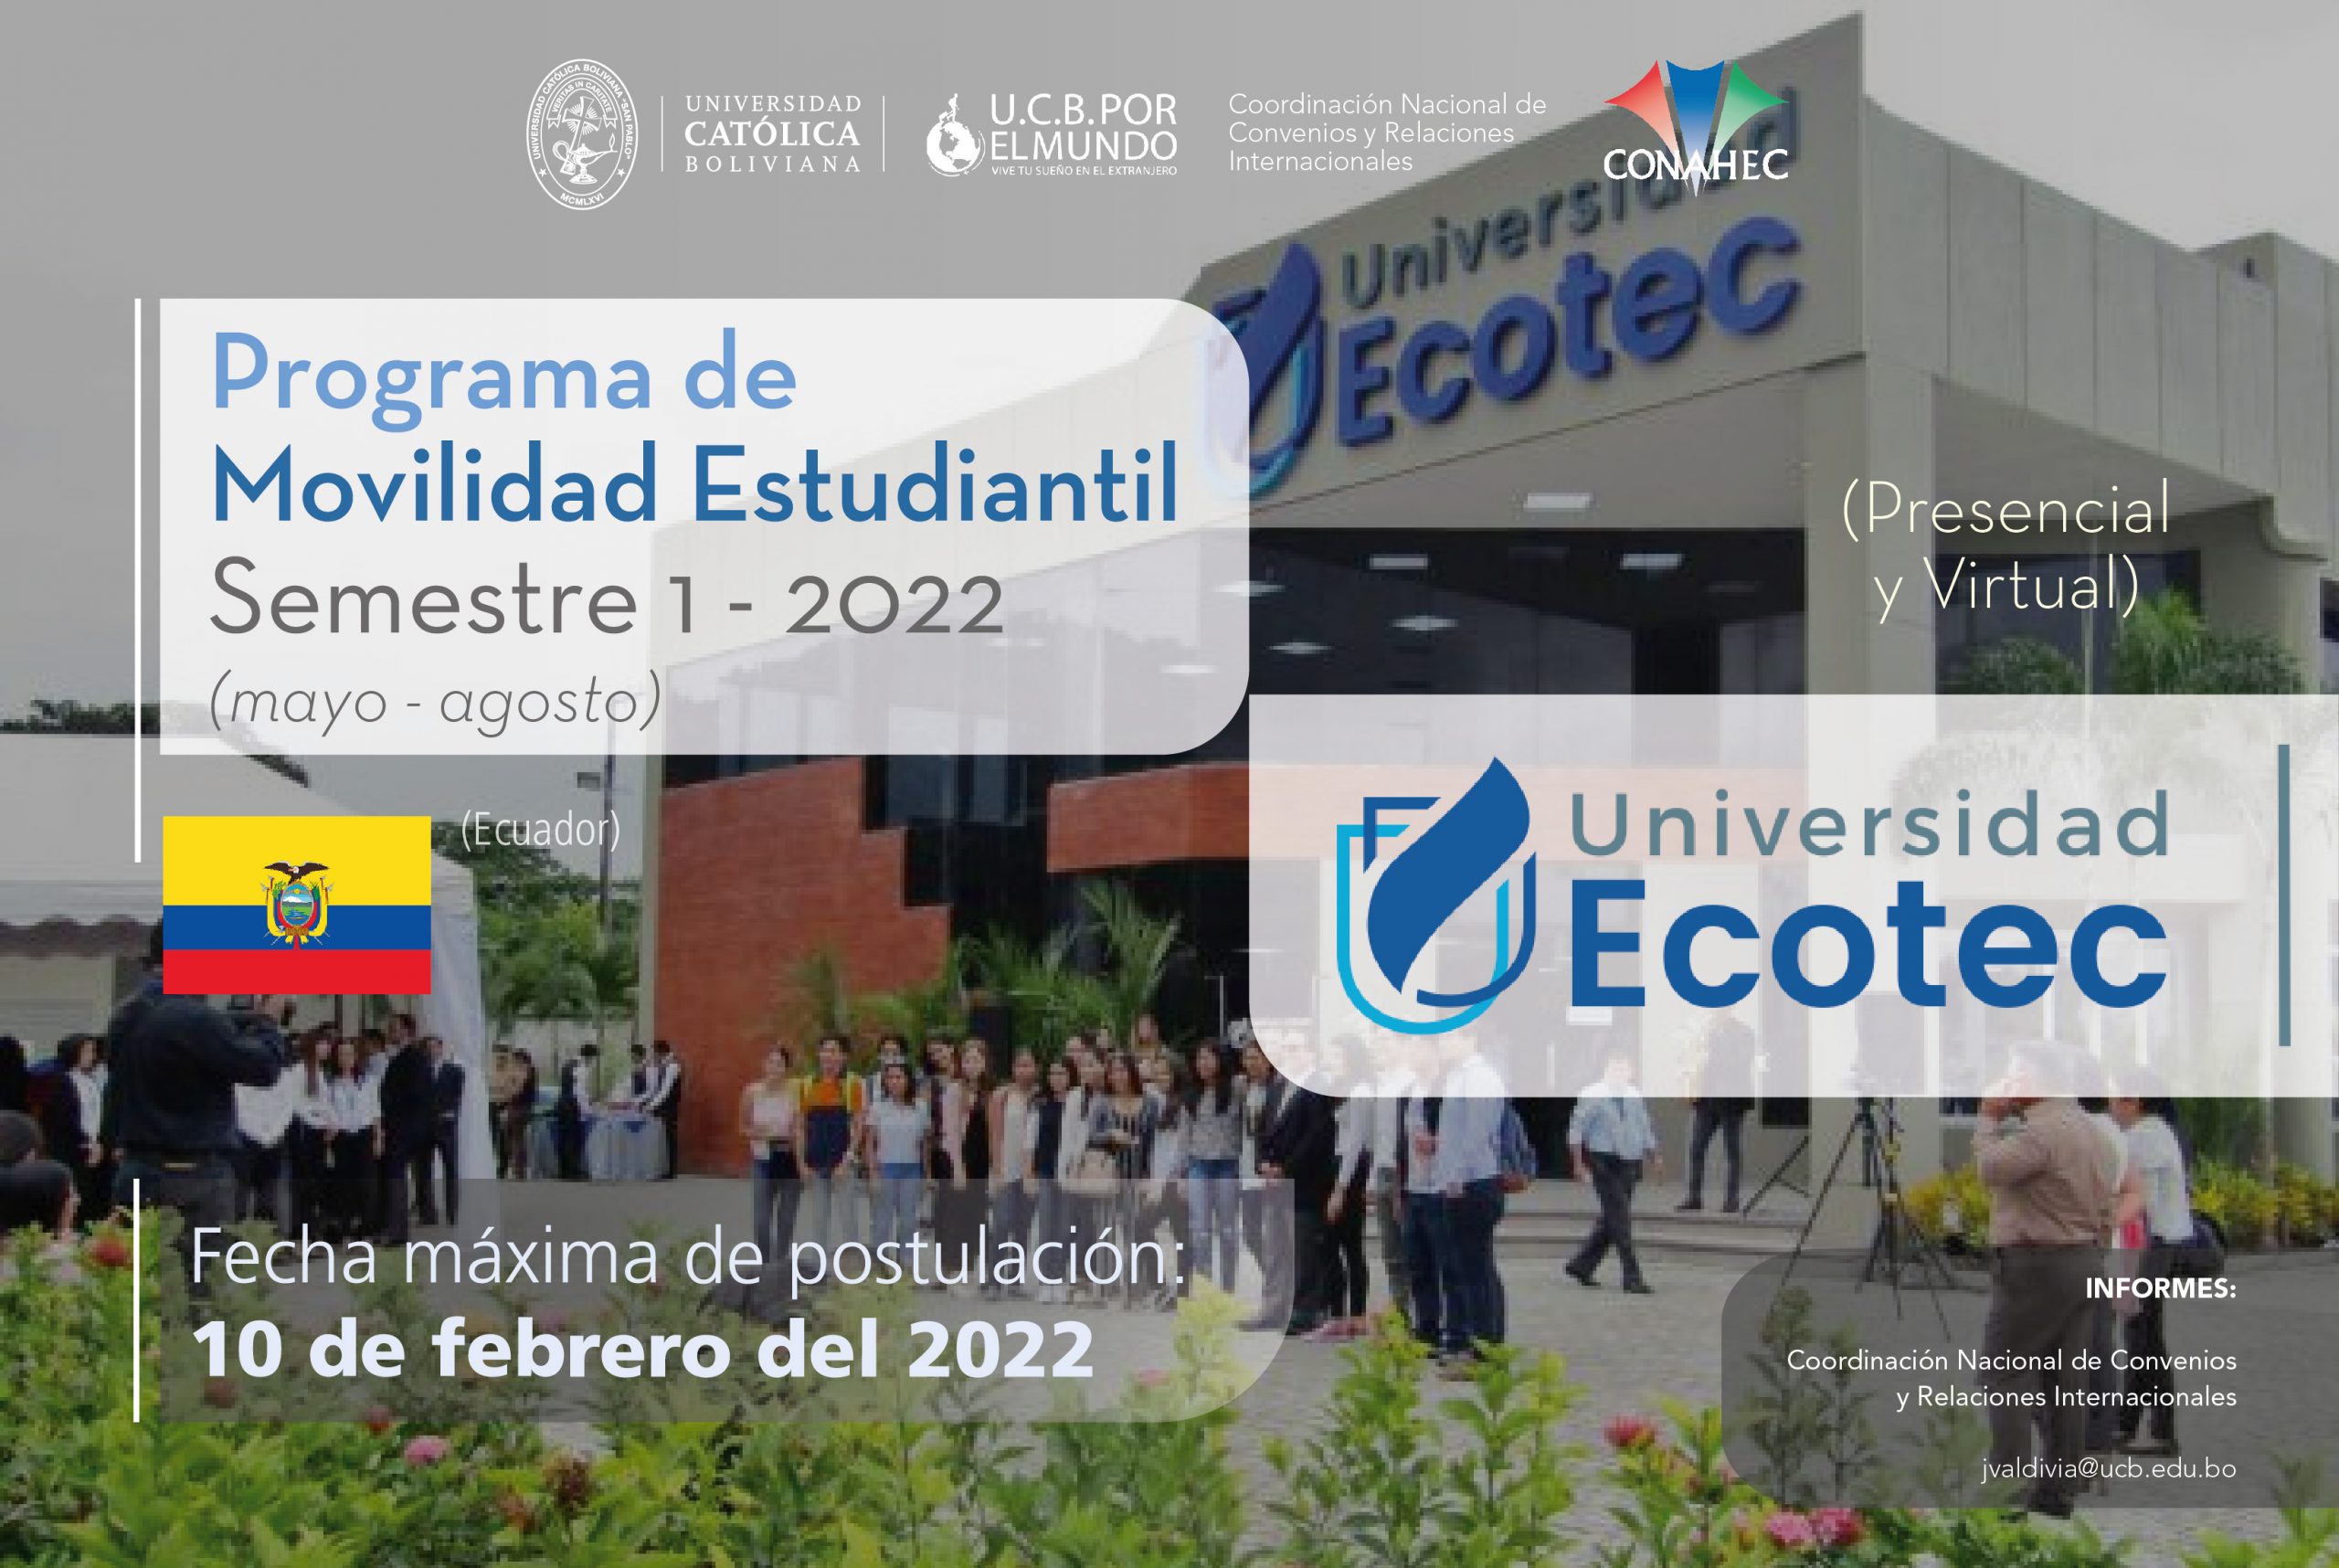 La Universidad Ecotec del Ecuador cuenta con cupos para este semestre 1-2022 bajo el Programa de Movilidad Estudiantil UCB por el Mundo bajo la modalidad virtual y presencial.